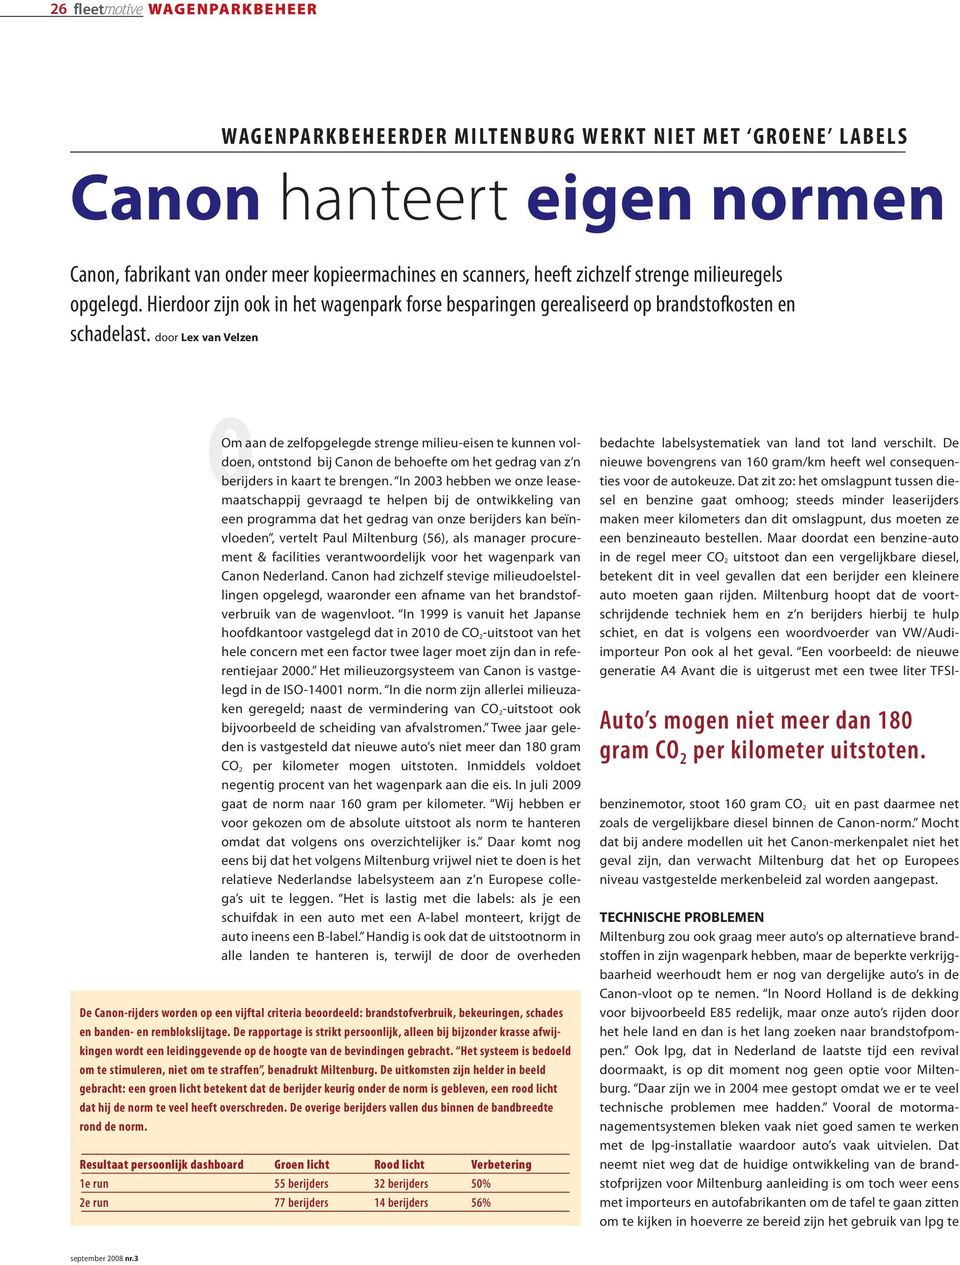 door Lex van Velzen OOm aan de zelfopgelegde strenge milieu-eisen te kunnen voldoen, ontstond bij Canon de behoefte om het gedrag van z n berijders in kaart te brengen.